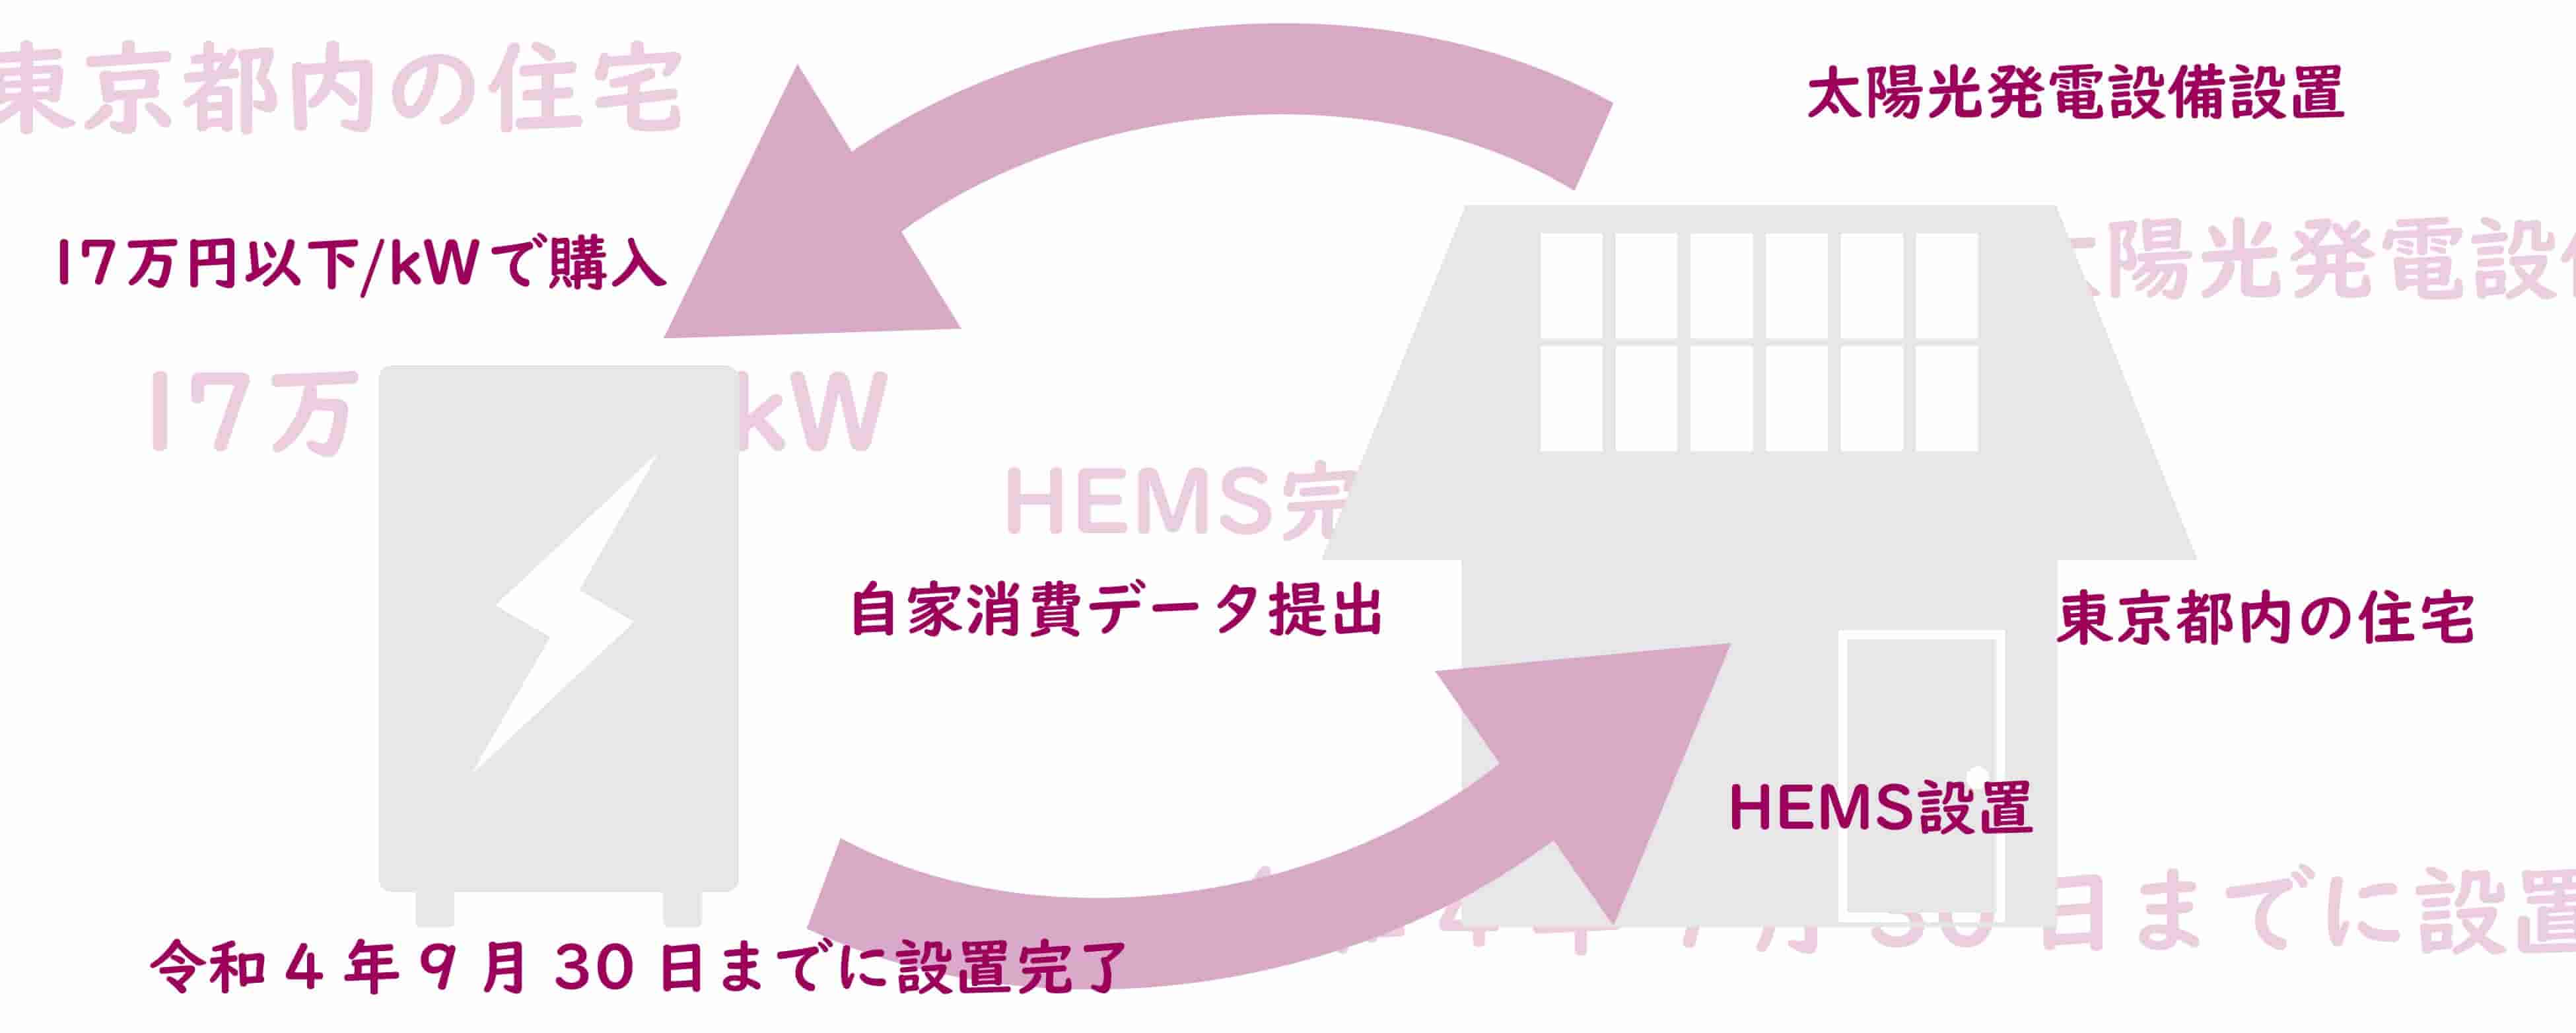 東京都による家庭用蓄電池の補助金の概要